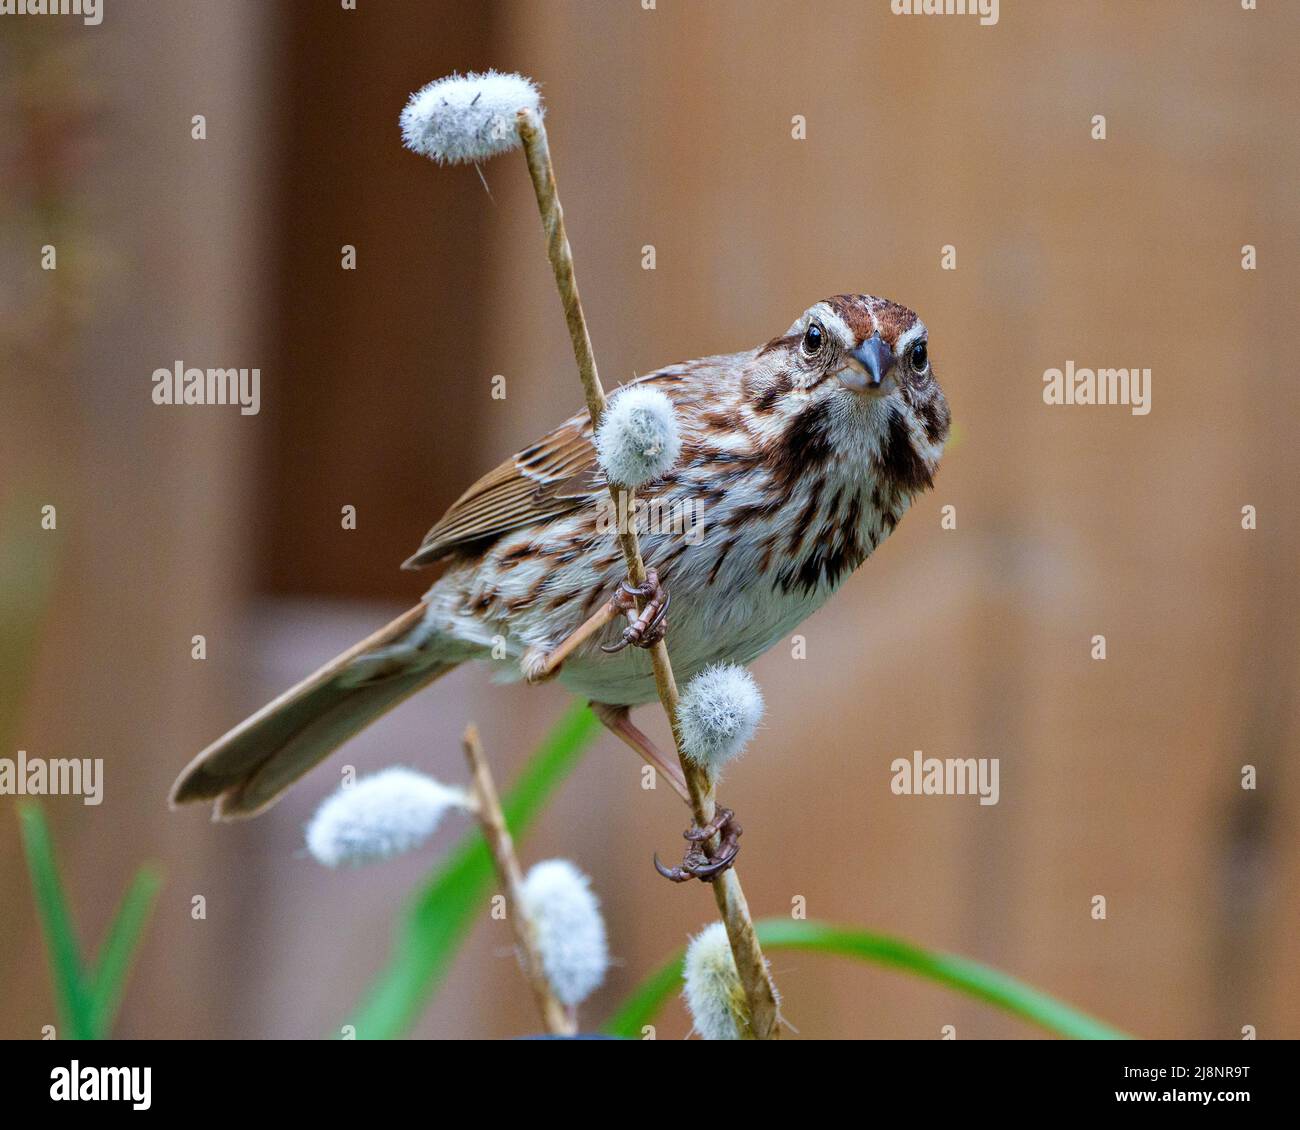 Song Sparrow thronte in seiner Umgebung und Umgebung auf einem Zweig mit braunem Hintergrund und zeigt ein braunes Federgefieder. Stockfoto